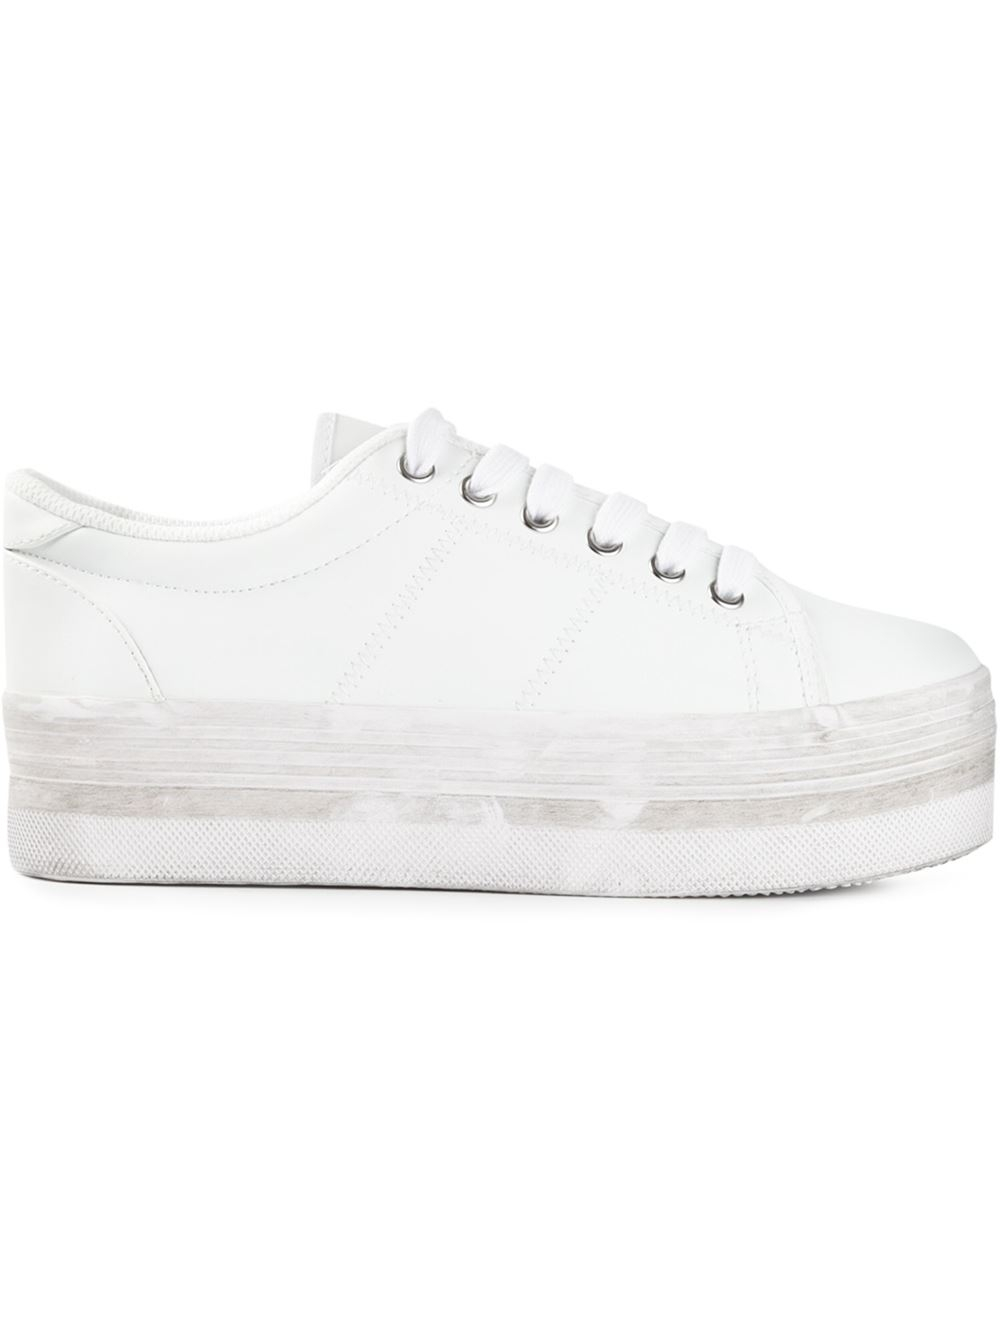 Tilskynde Anbefalede hovedlandet Jeffrey Campbell 'Zomg' Platform Sneakers in White | Lyst